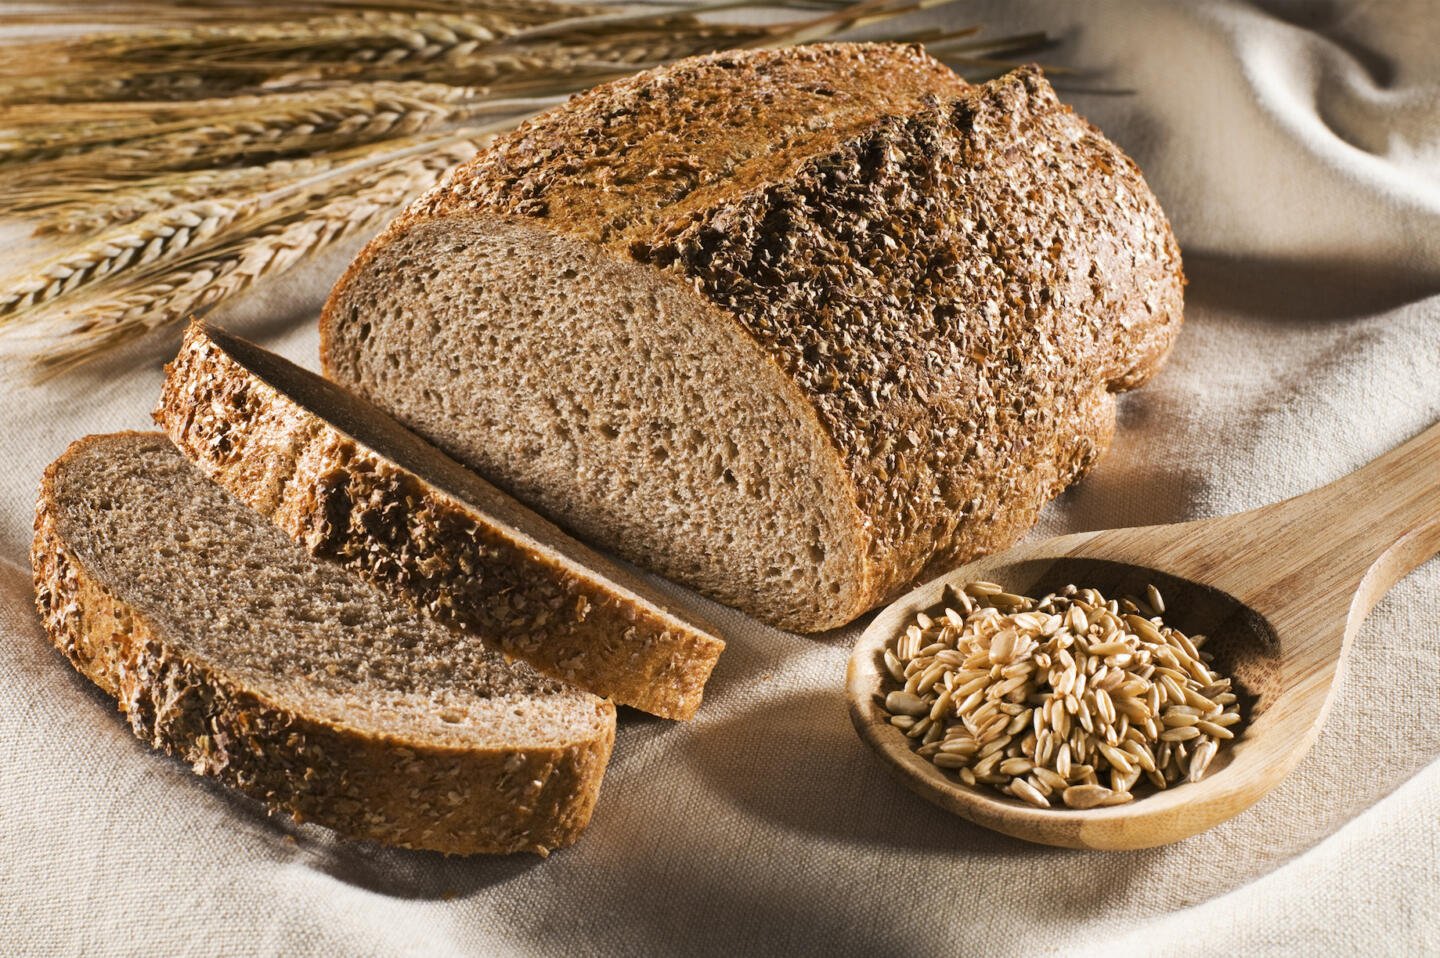 Хлеб при повышенном сахаре. Хлеб пшеничный цельнозерновой. Ржаной цельнозерновой хлеб. Хлеб грубого помола. Черный хлеб.